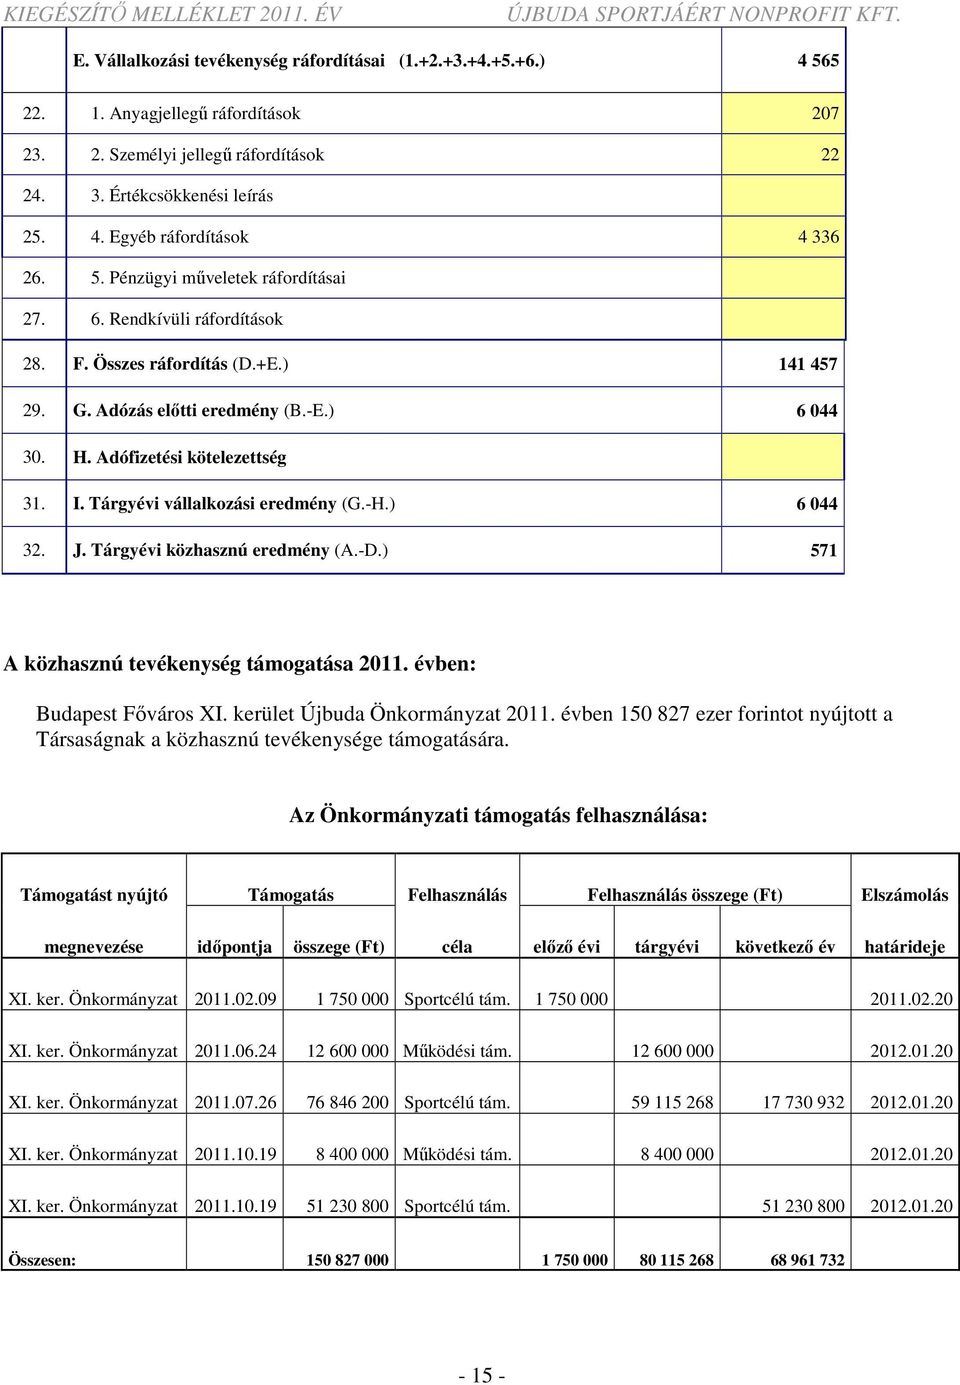 Tárgyévi vállalkozási eredmény (G.-H.) 6 044 32. J. Tárgyévi közhasznú eredmény (A.-D.) 571 A közhasznú tevékenység támogatása 2011. évben: Budapest Főváros XI. kerület Újbuda Önkormányzat 2011.